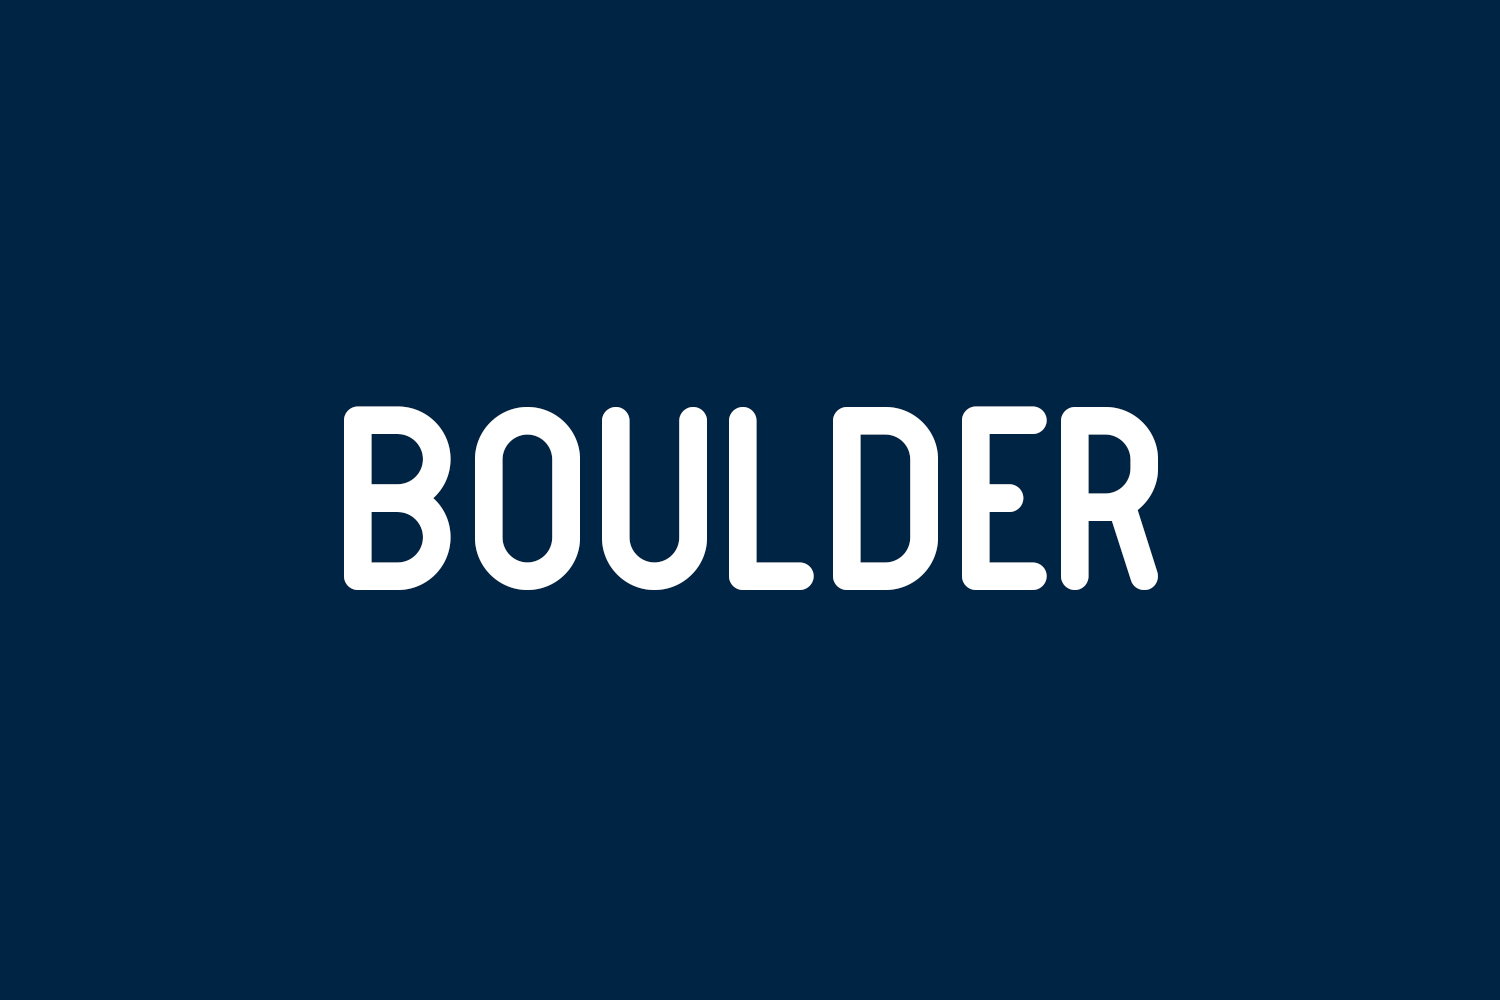 Boulder Free Font